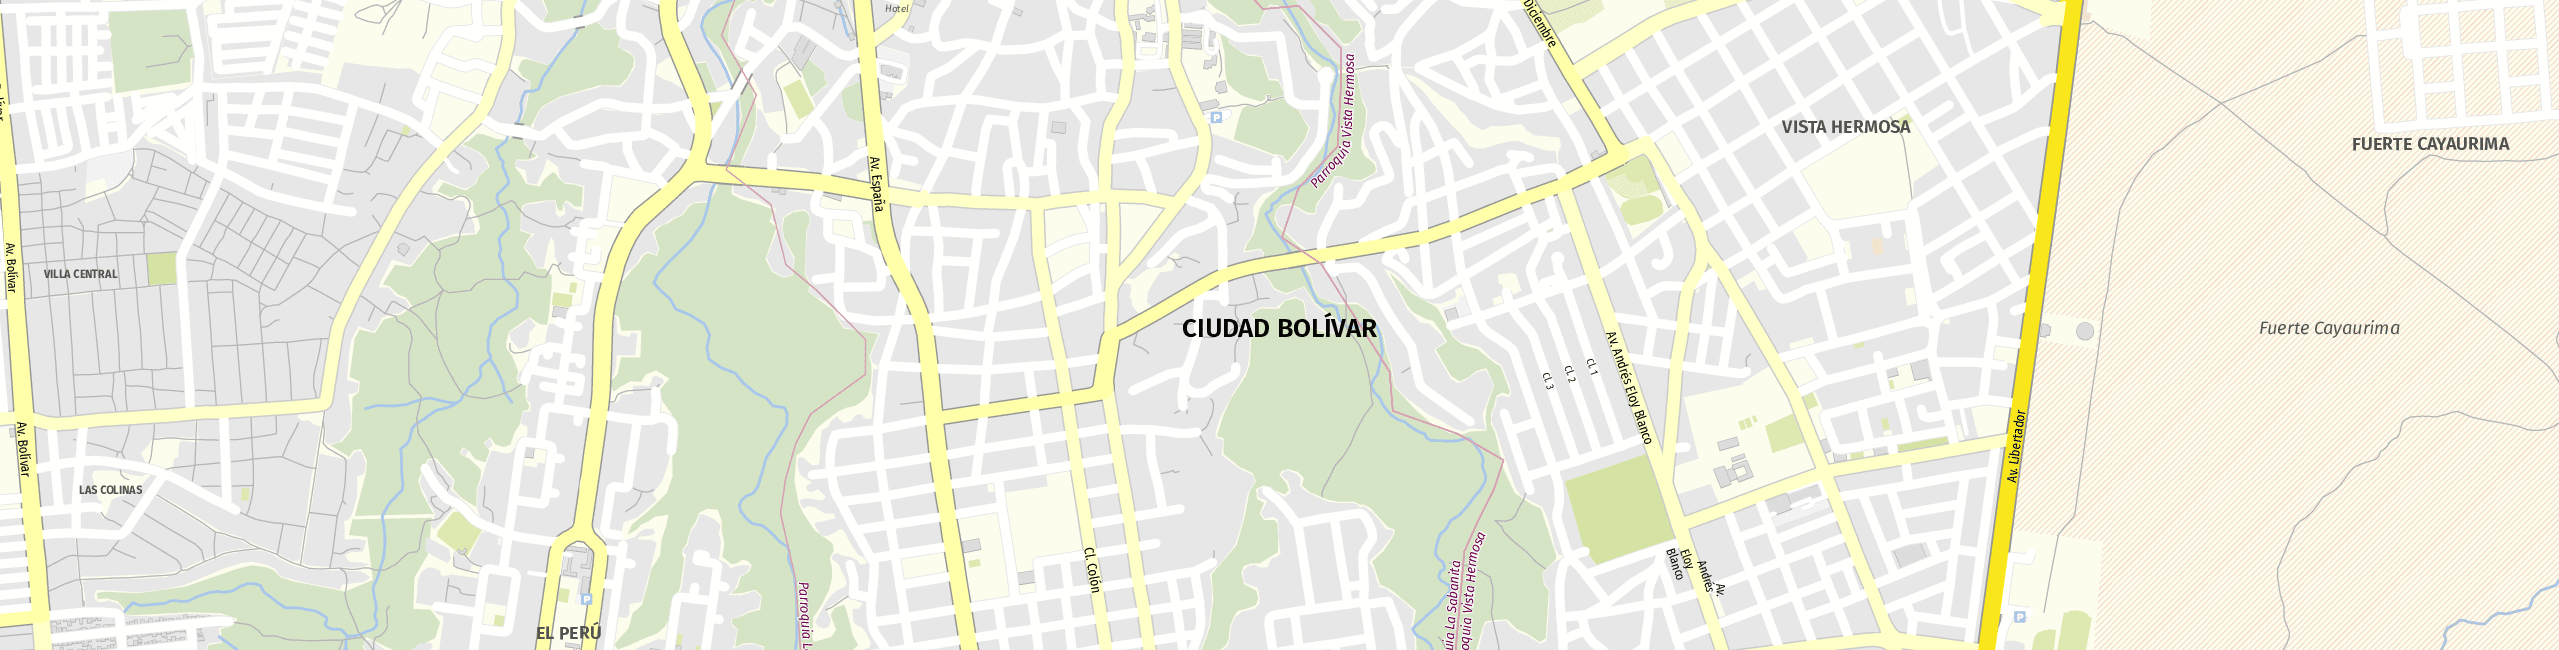 Stadtplan Ciudad Bolívar zum Downloaden.